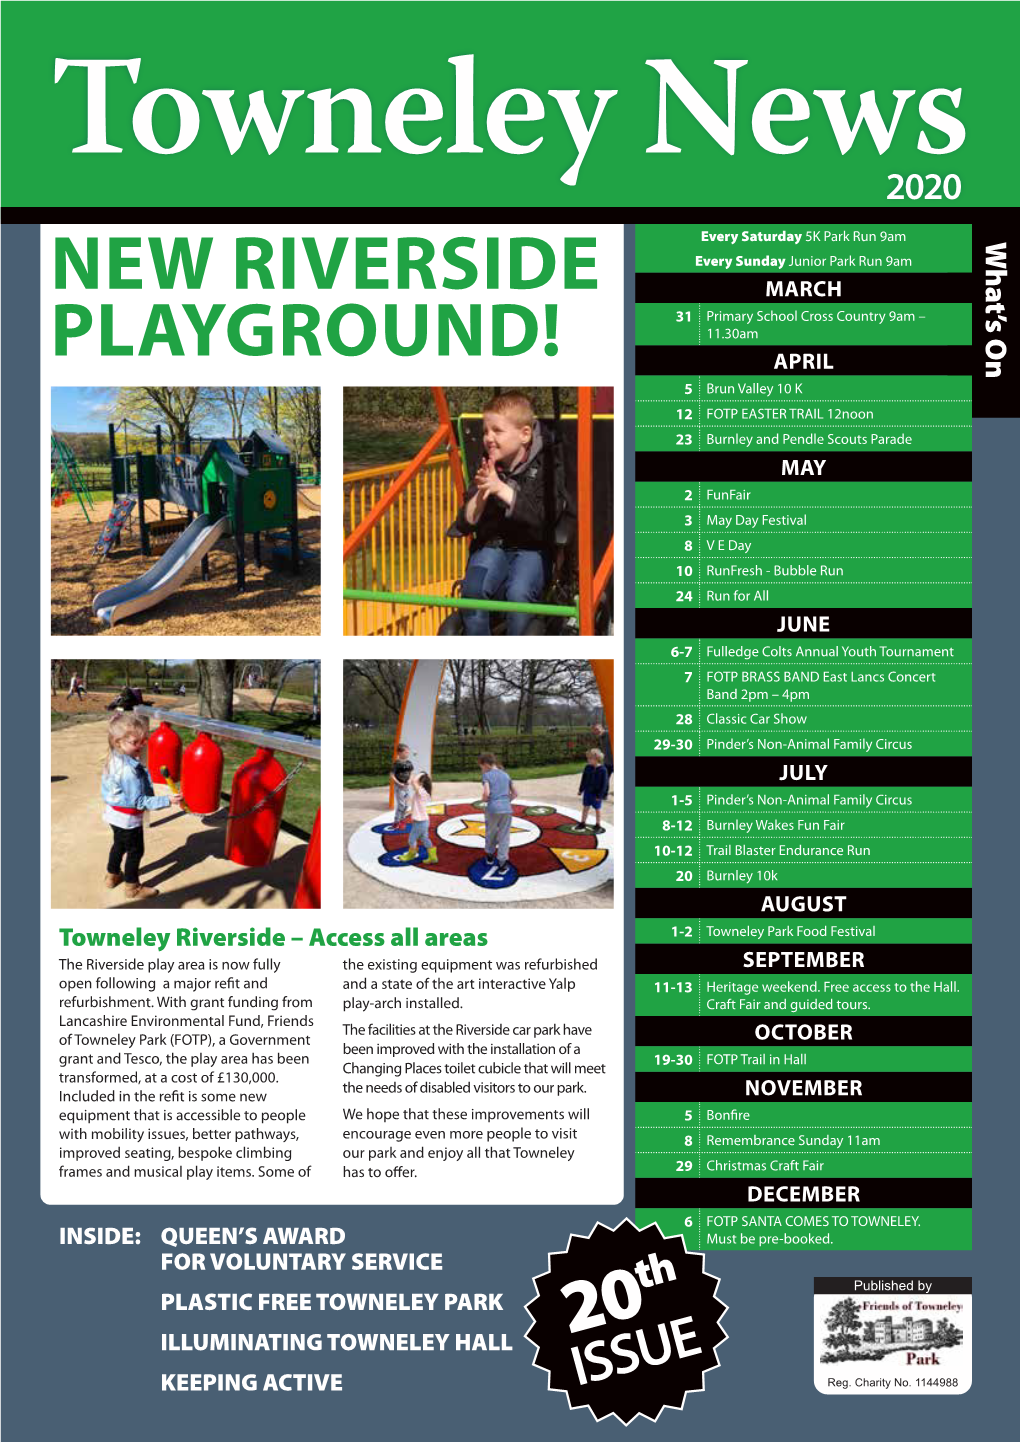 New Riverside Playground!